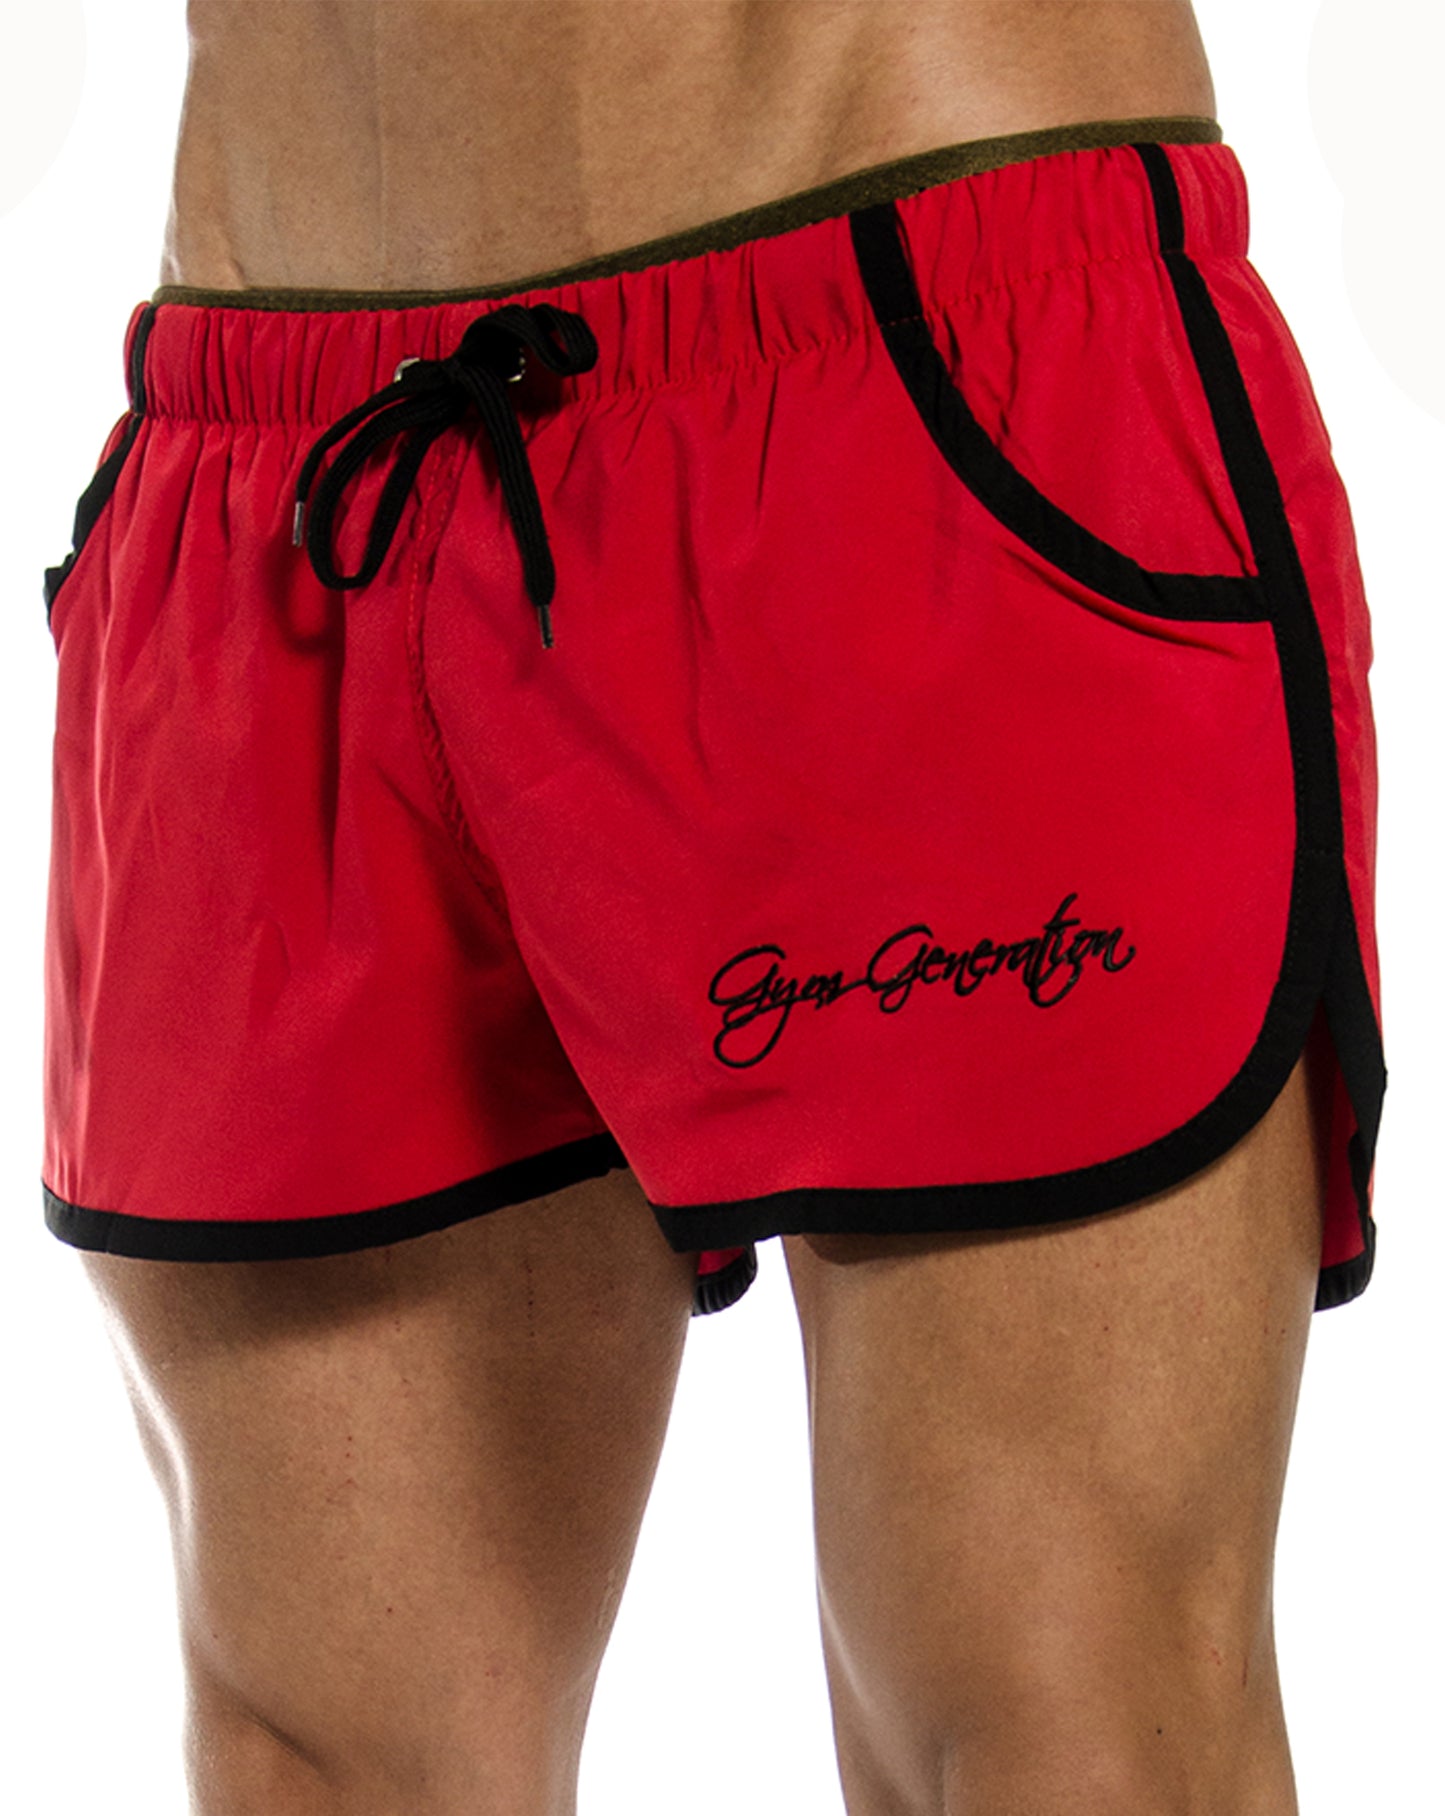 Gym Generation Aesthetic Gym Shorts in Rot, mit atmungsaktivem Material und optimaler Beinfreiheit für intensives Training